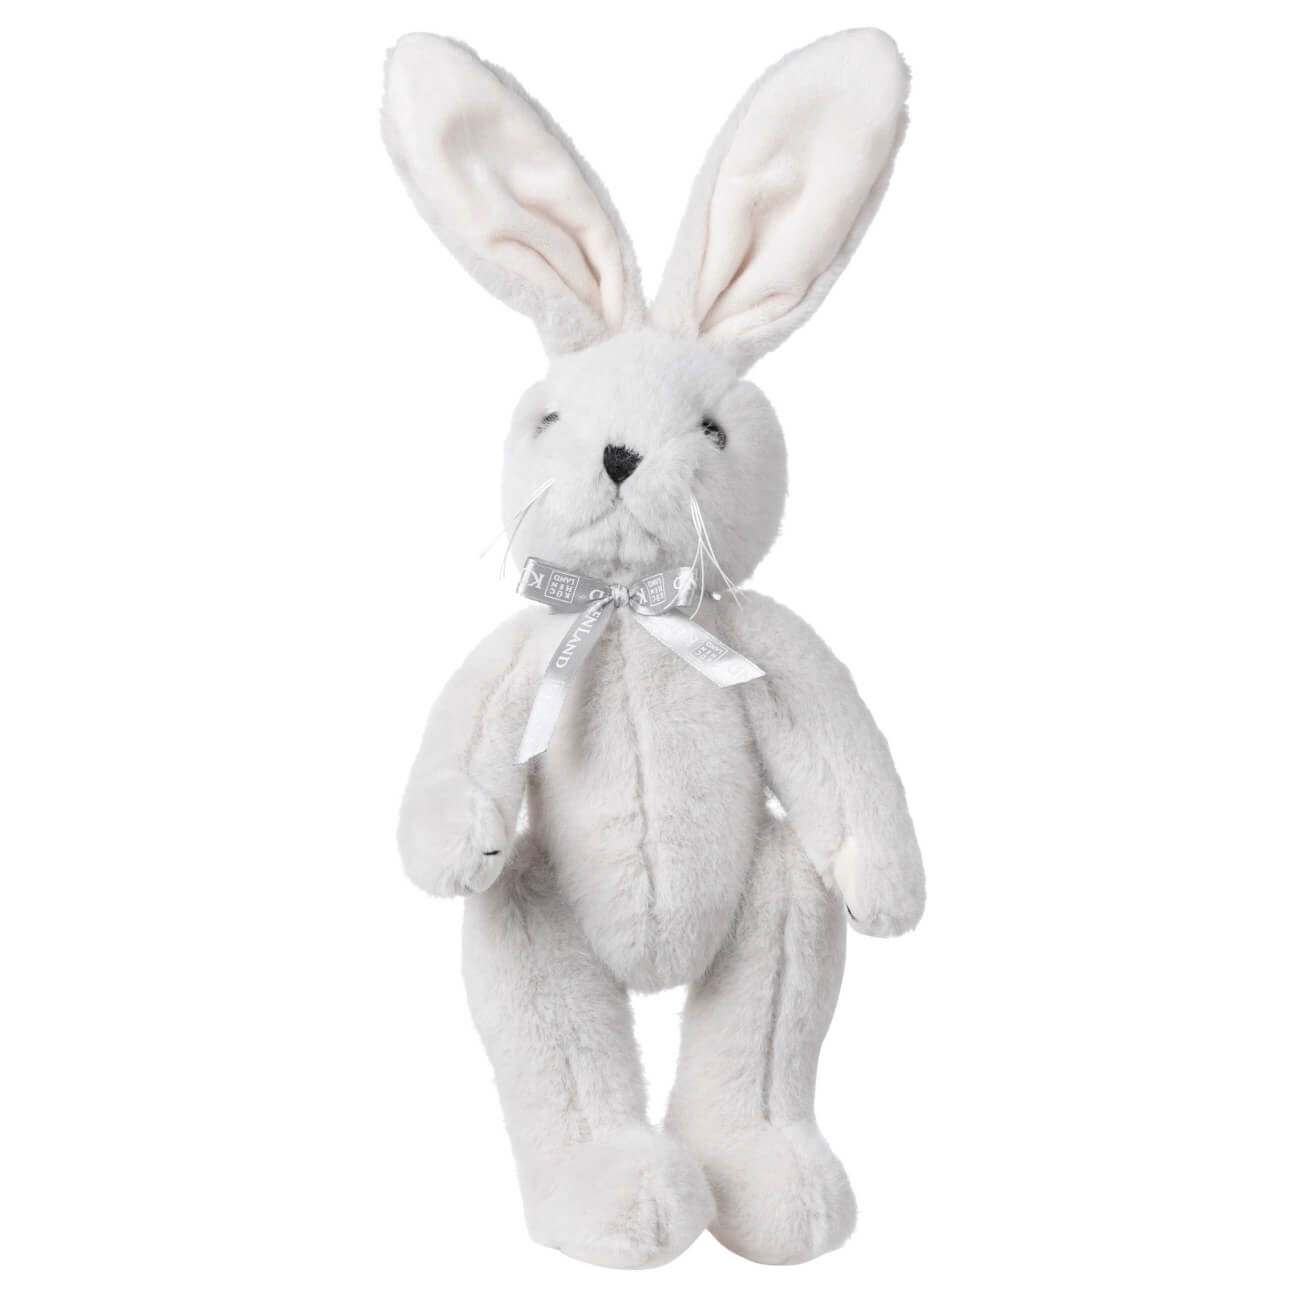 Игрушка, 30 см, мягкая, с подвижными лапами, полиэстер, светло-серая, Кролик, Rabbit toy игрушка 30 см мягкая полиэстер синтепон серая зайка в платье rabbit